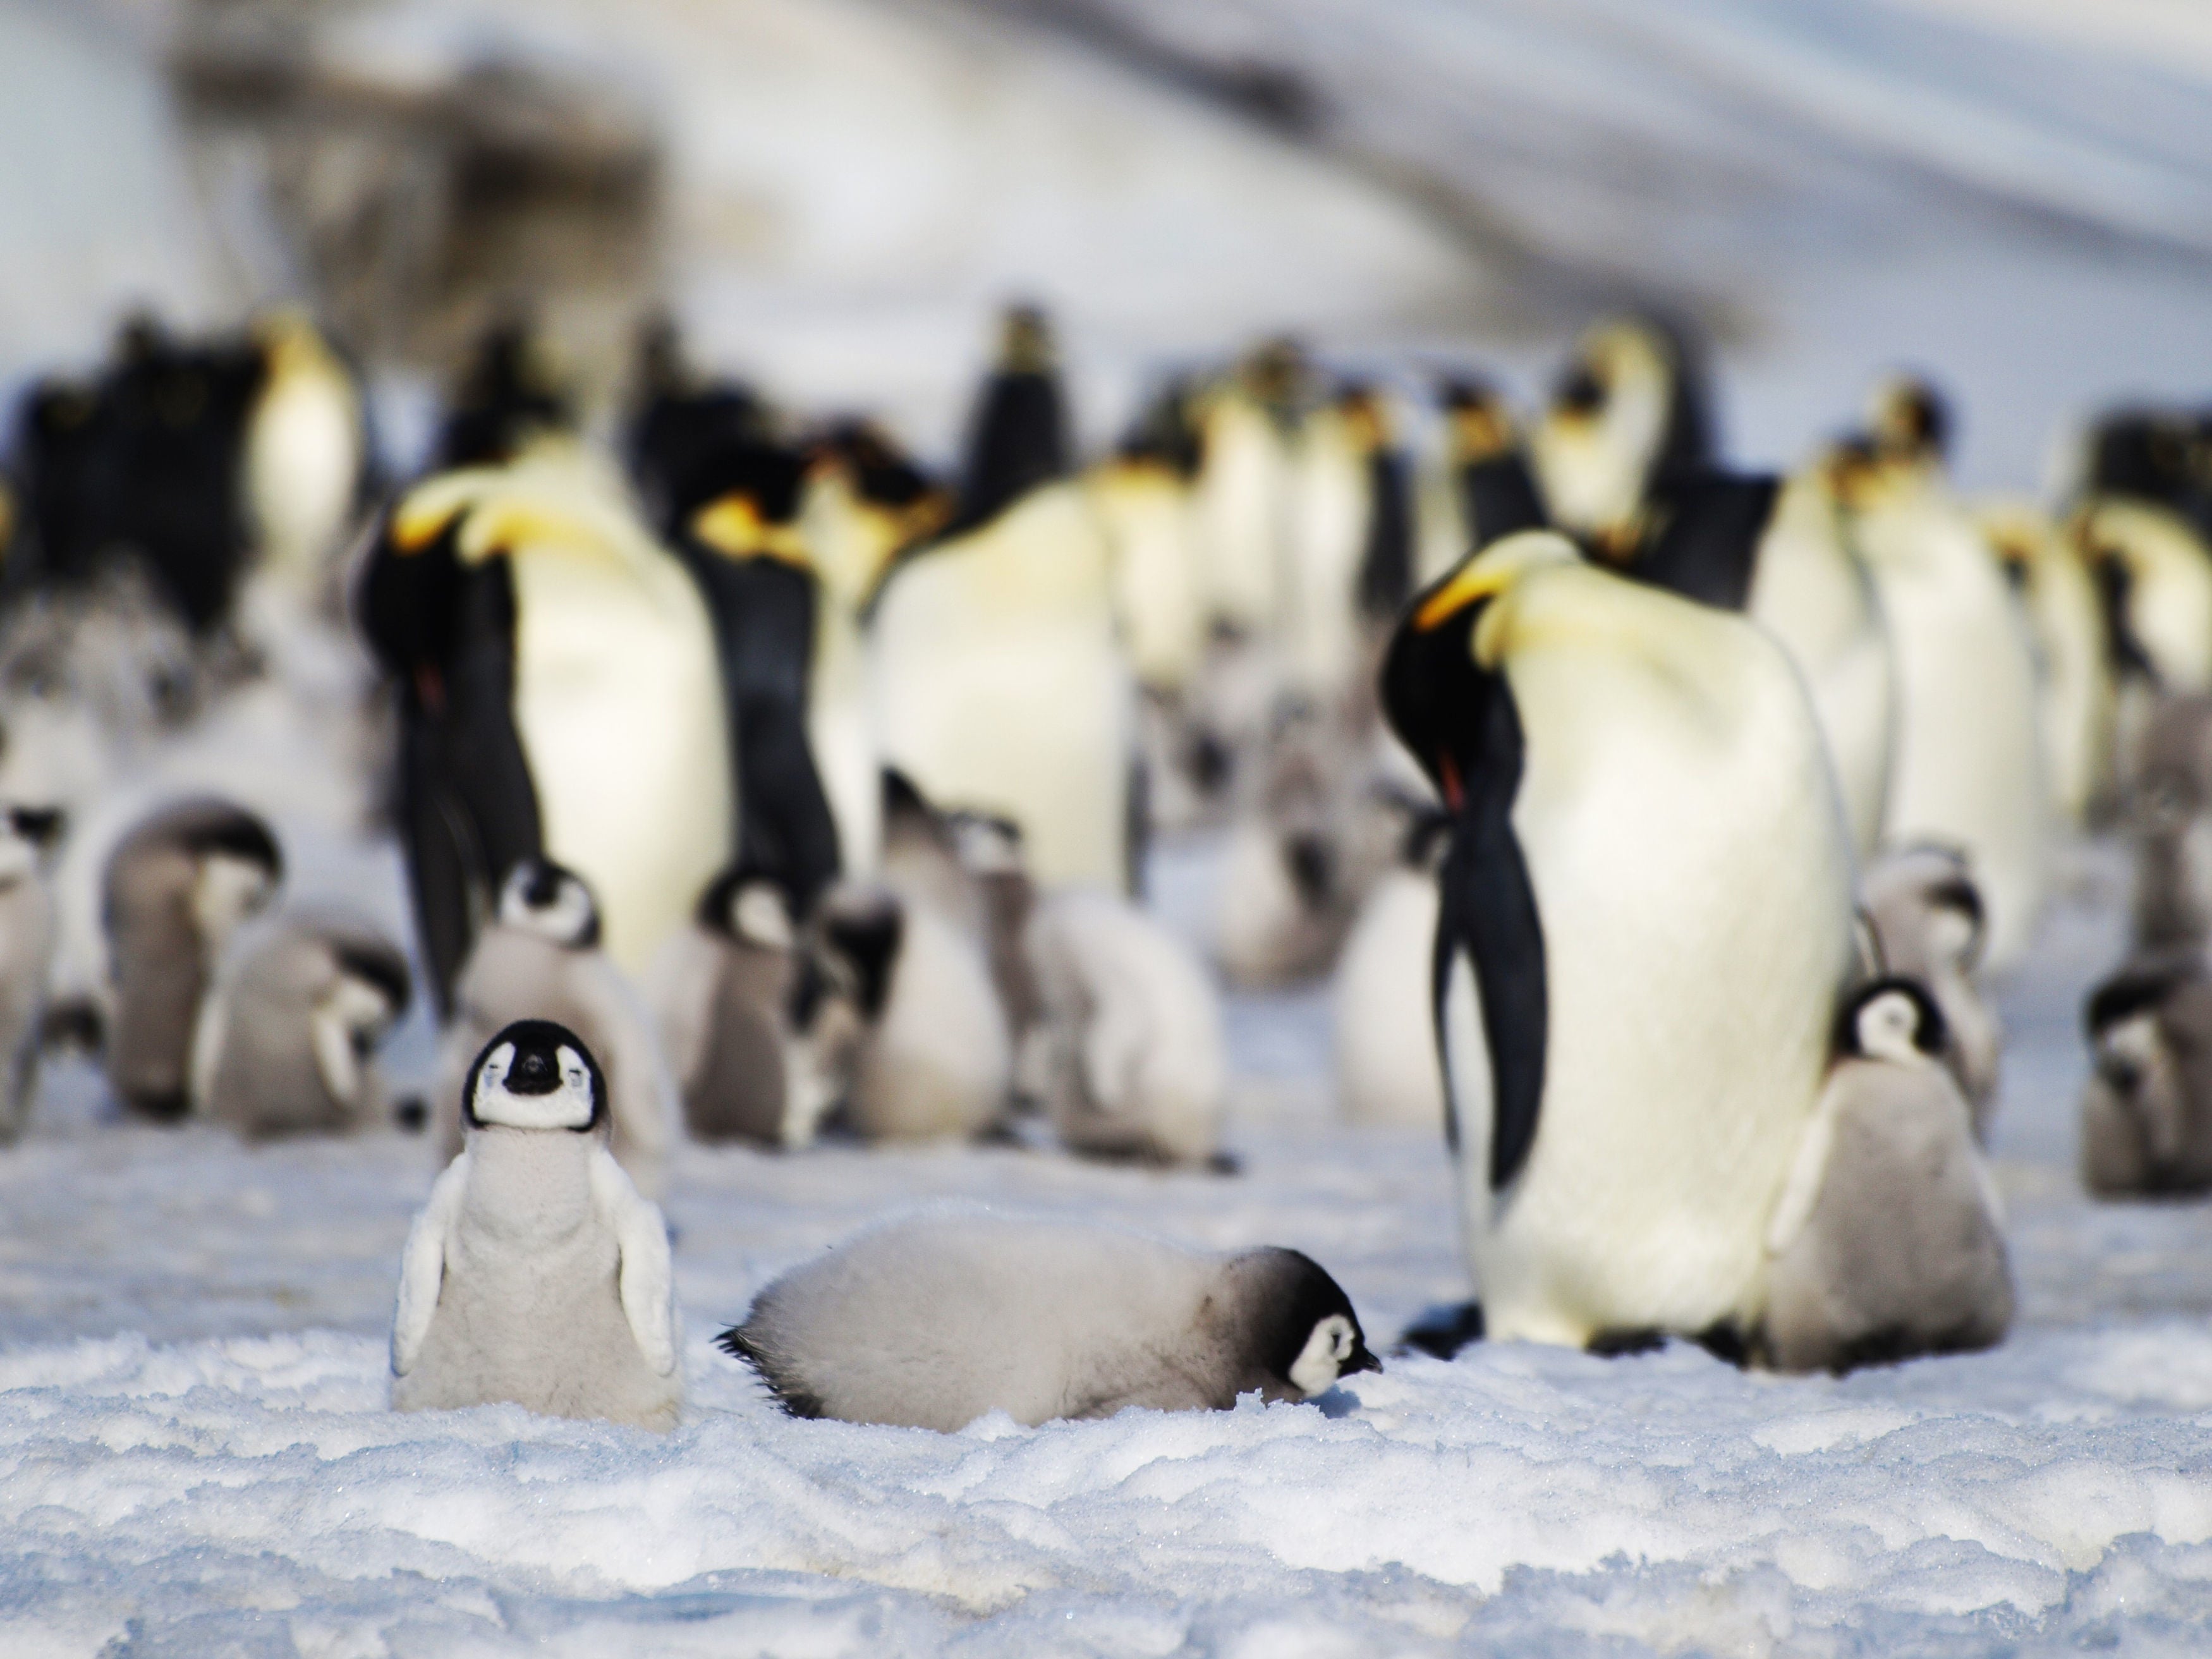 (Non-mummified) penguins in Antarctica